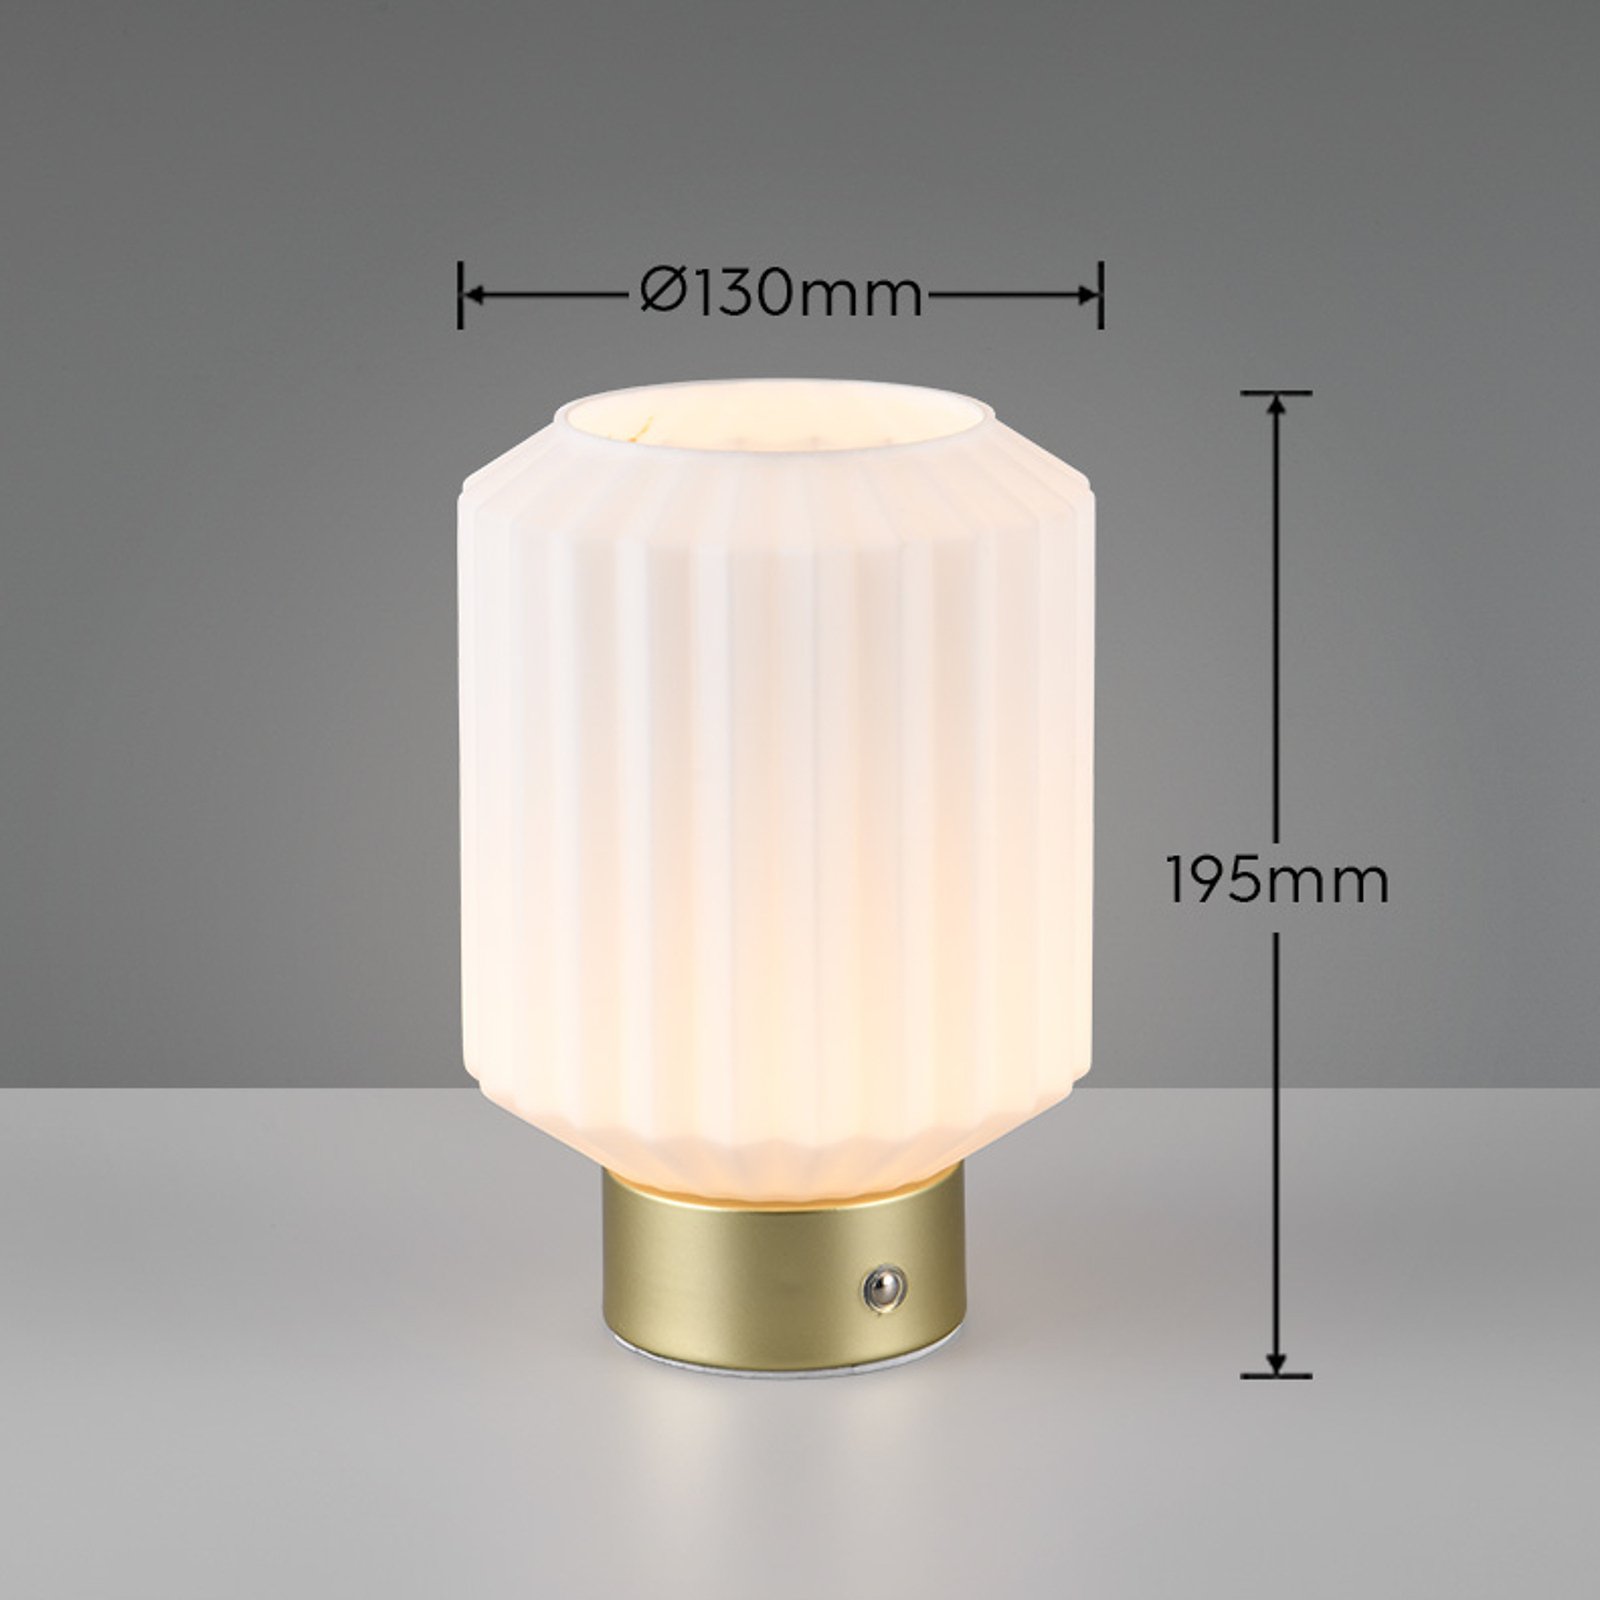 Lord LED genopladelig bordlampe, messing/opal, højde 19,5 cm, glas